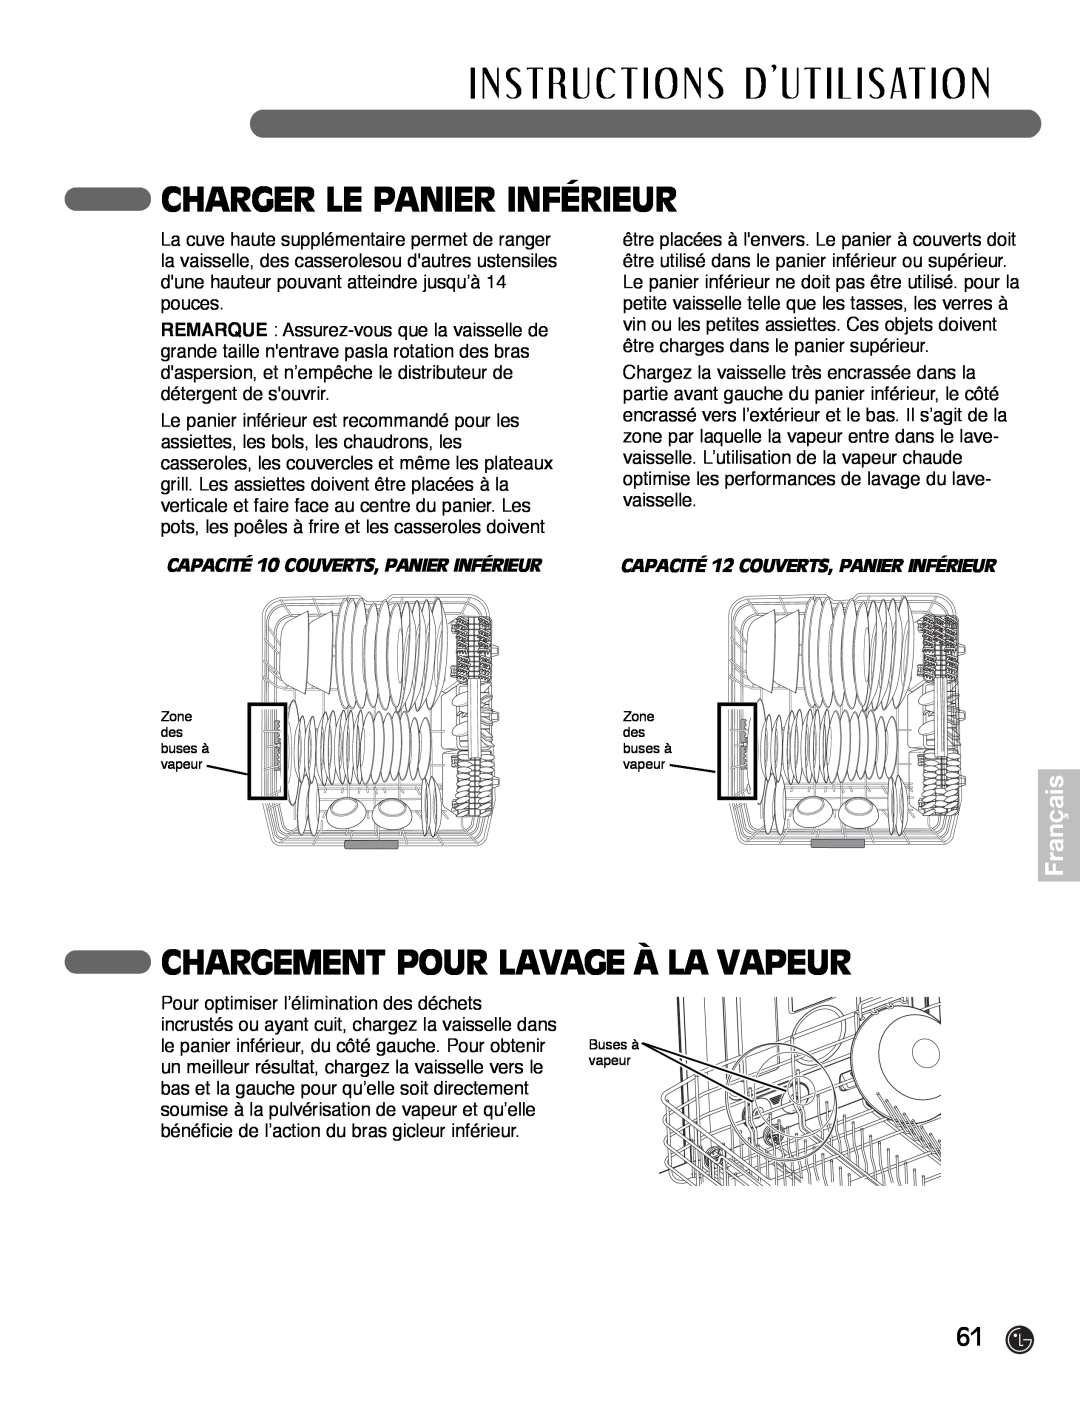 LG Electronics LDF7932BB, LDF7932WW, LDF7932ST Charger Le Panier Inférieur, Chargement Pour Lavage À La Vapeur, Français 